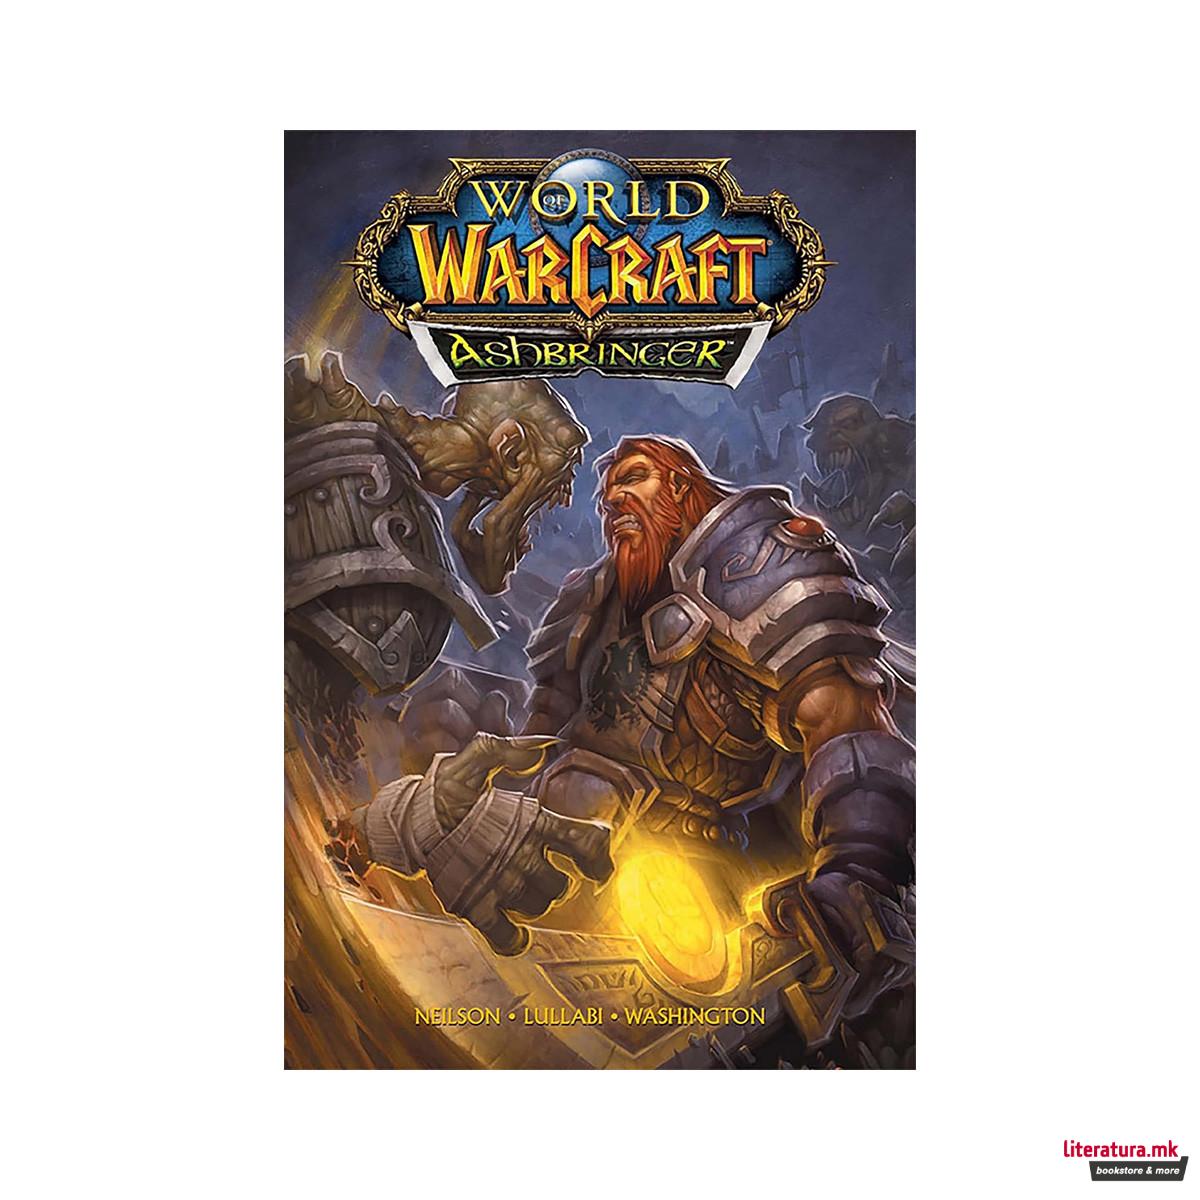 World of Warcraft: Ashbringer (Blizzard Legends) 